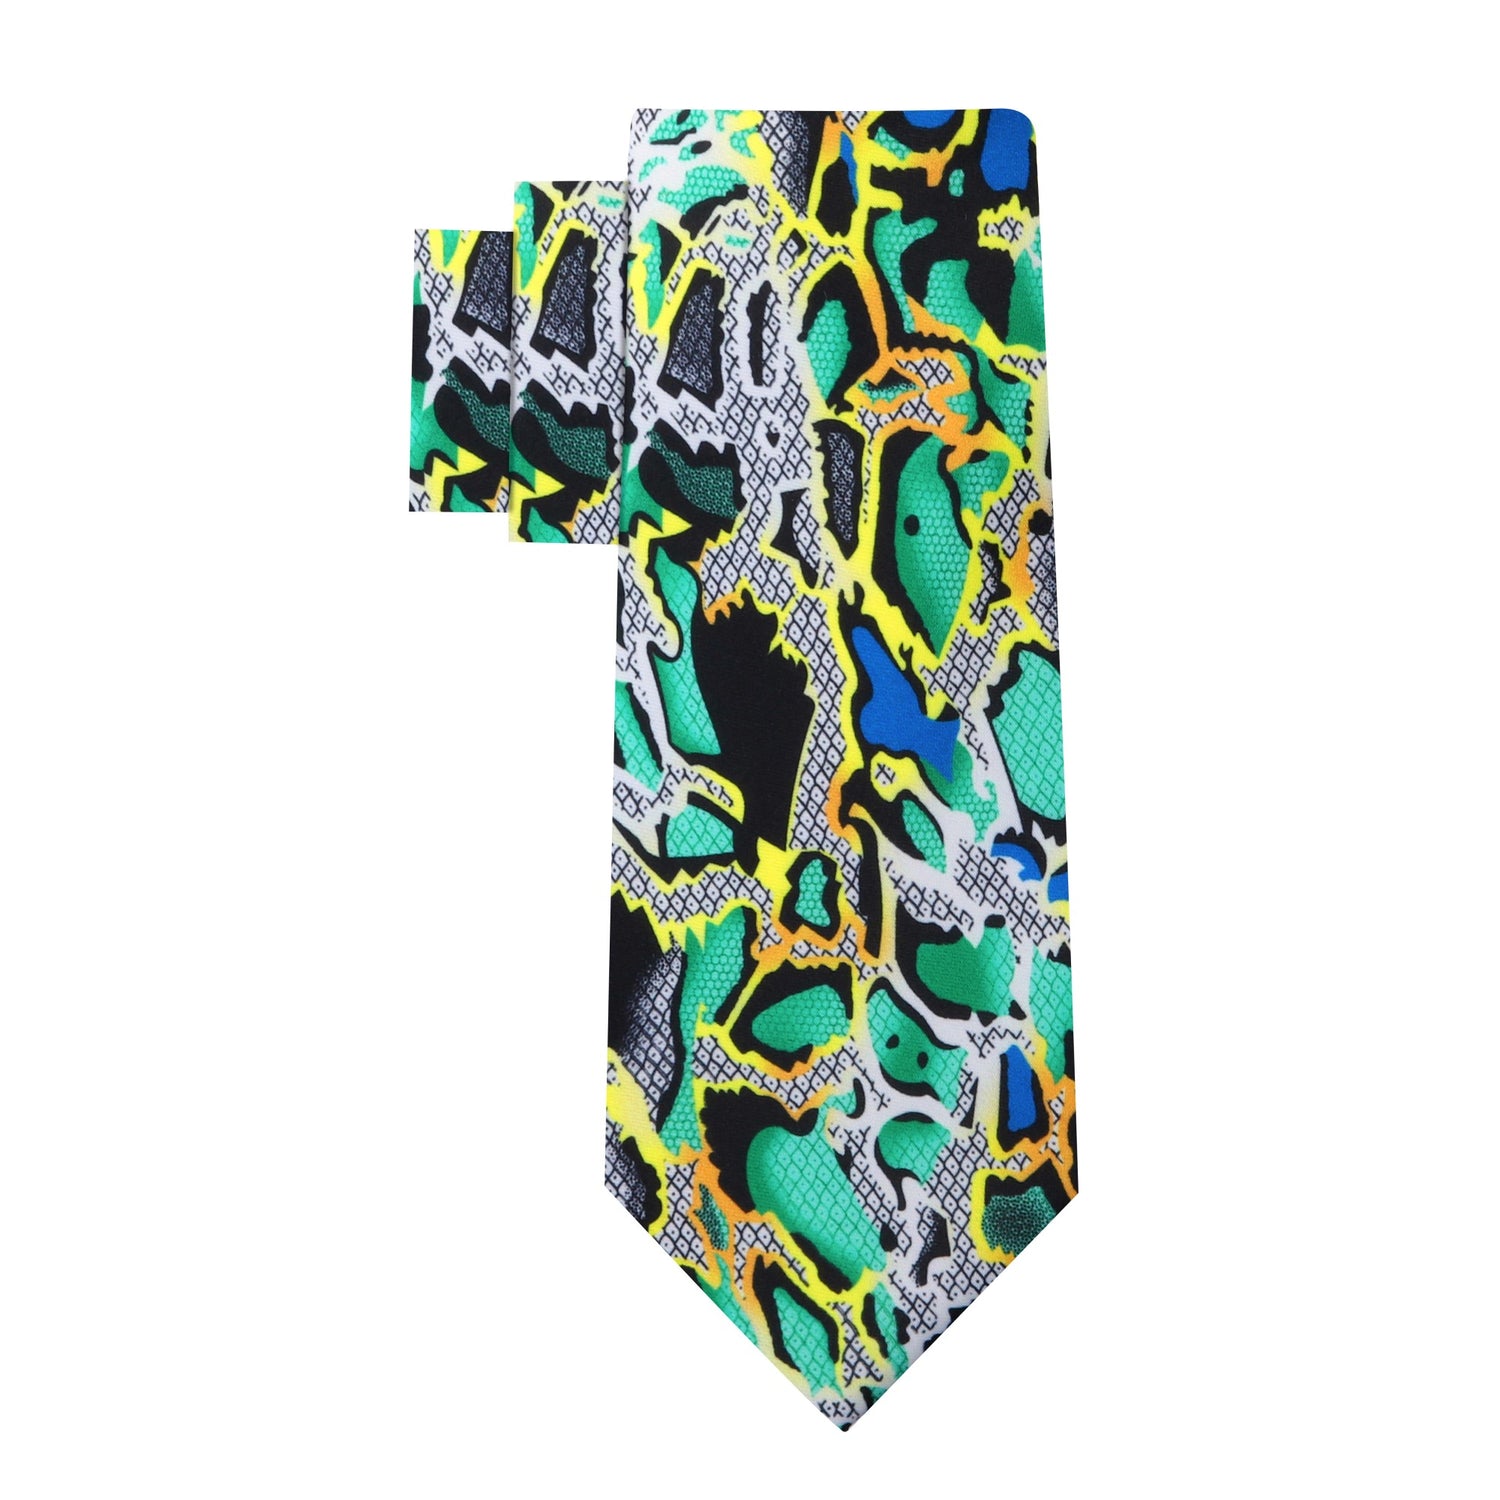 Alt View: Green, Yellow, Blue, Black, Grey Snakeskin Necktie